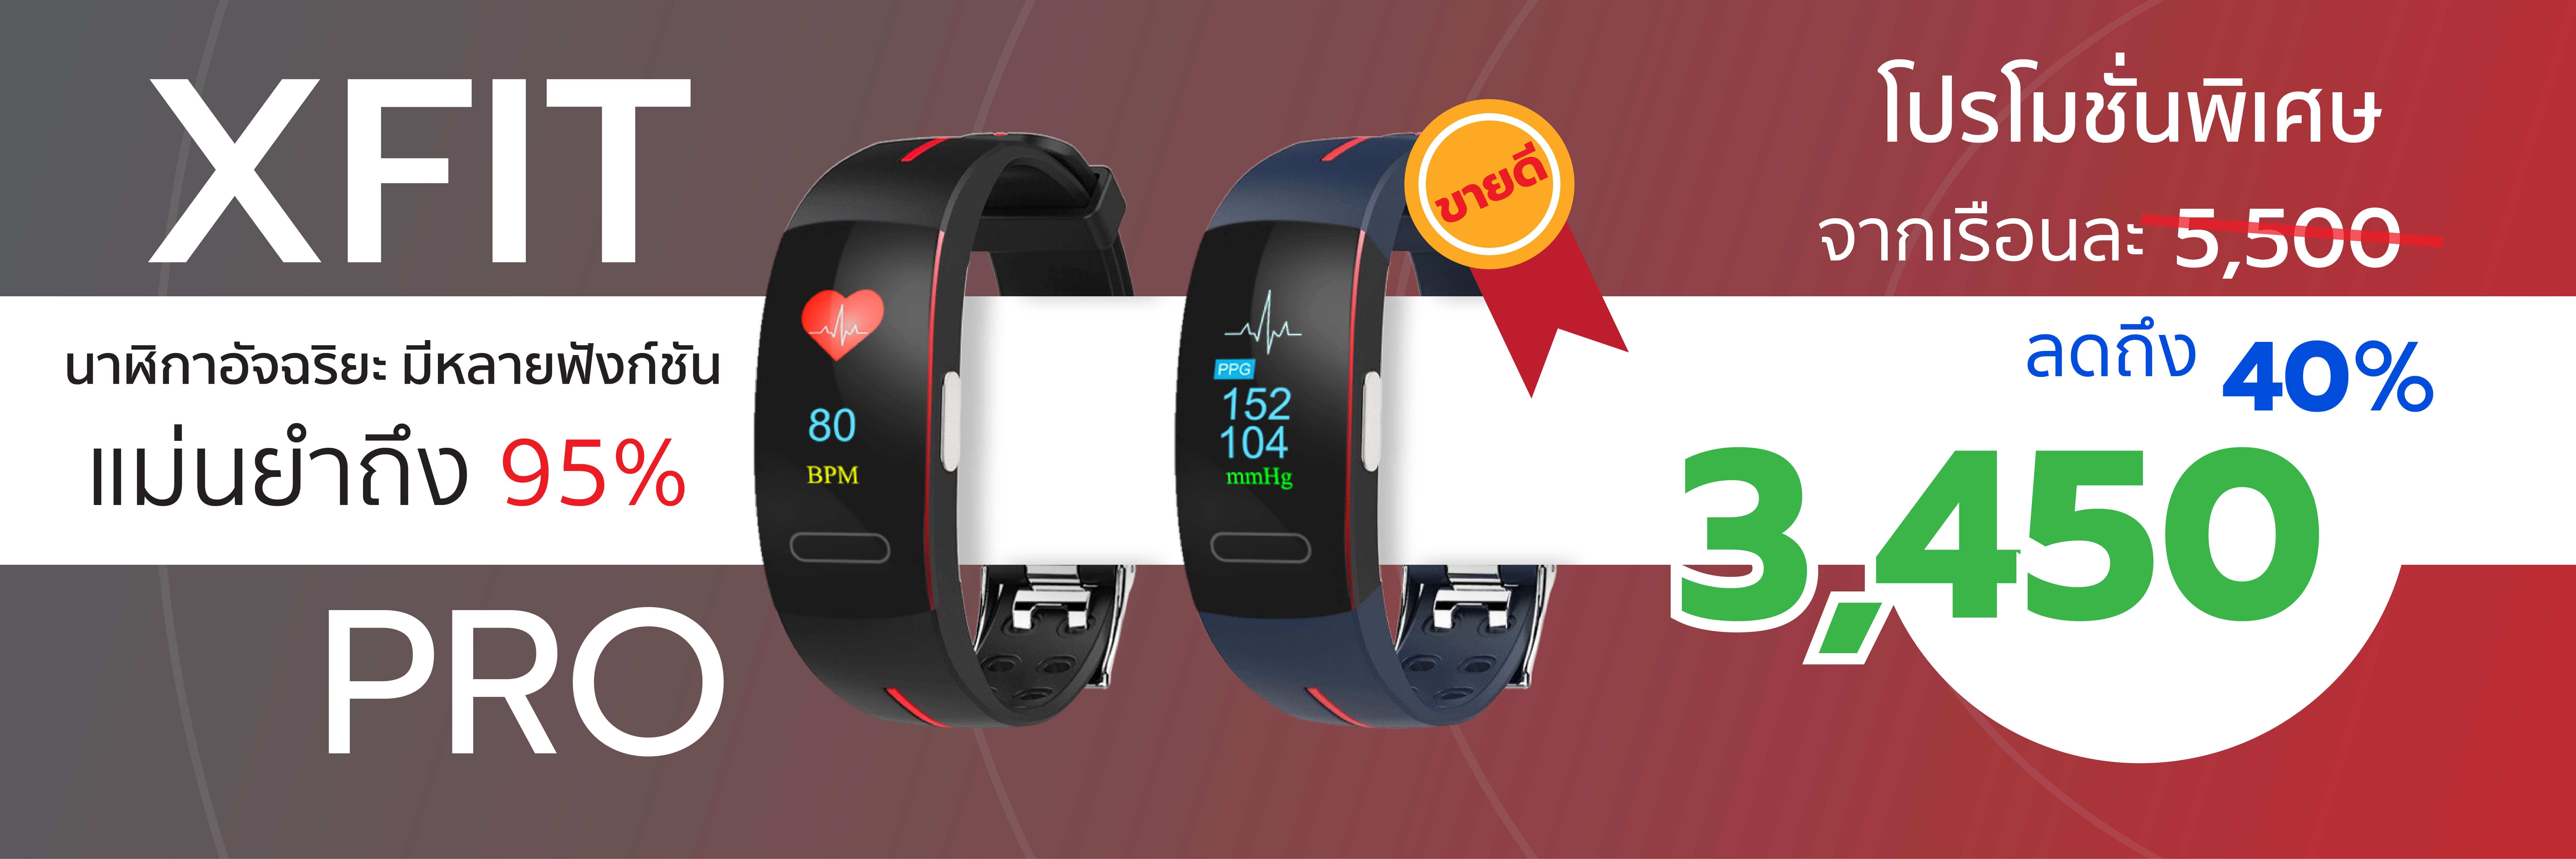 XFit Pro นาฬิกาวัดความดัน-คลื่นไฟฟ้าหัวใจ